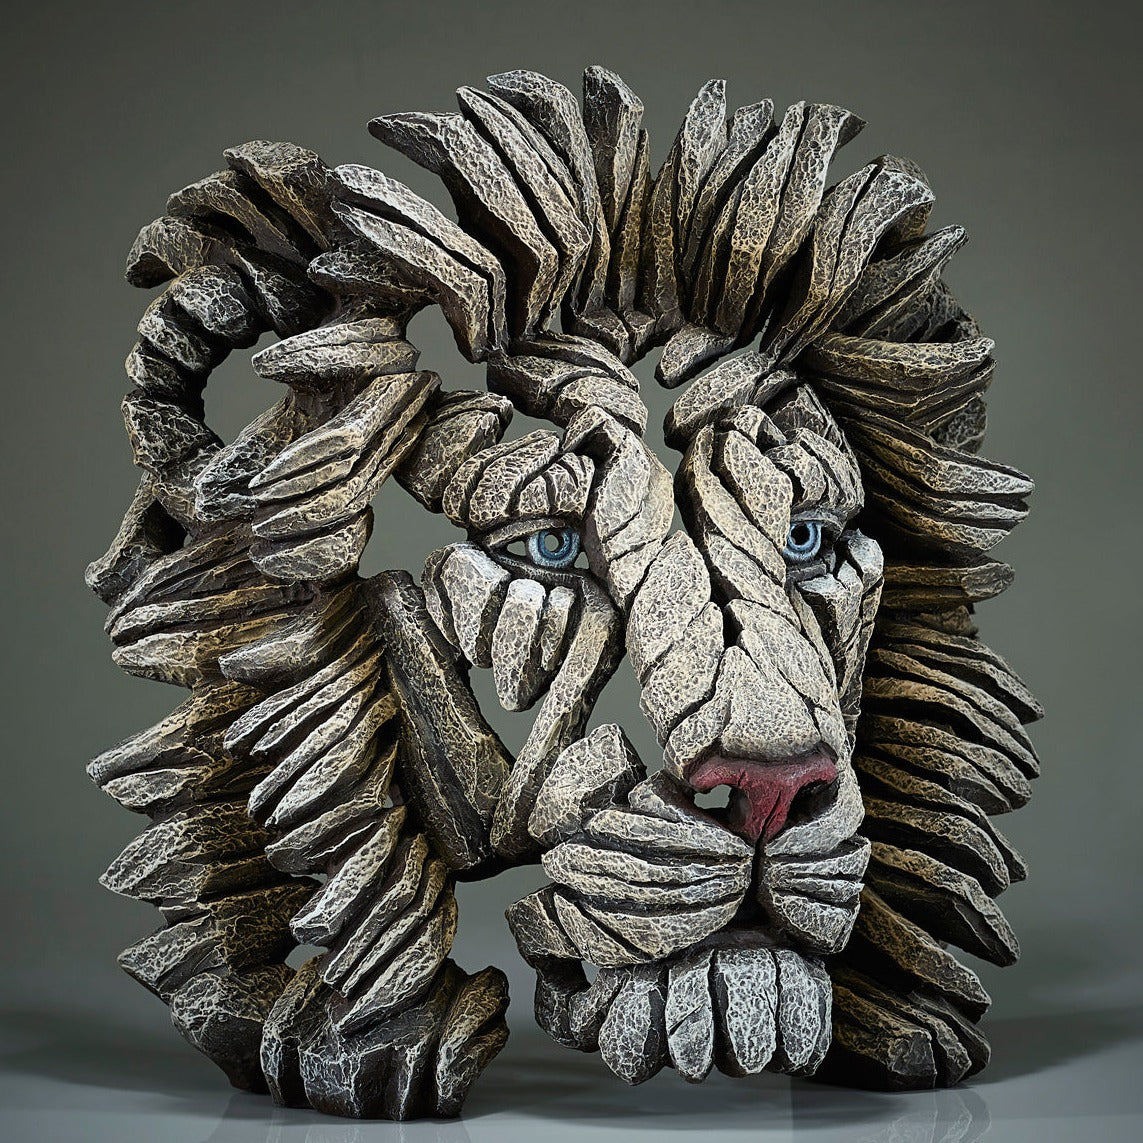 Lion Bust Savannah from Edge Sculpture by Matt Buckley